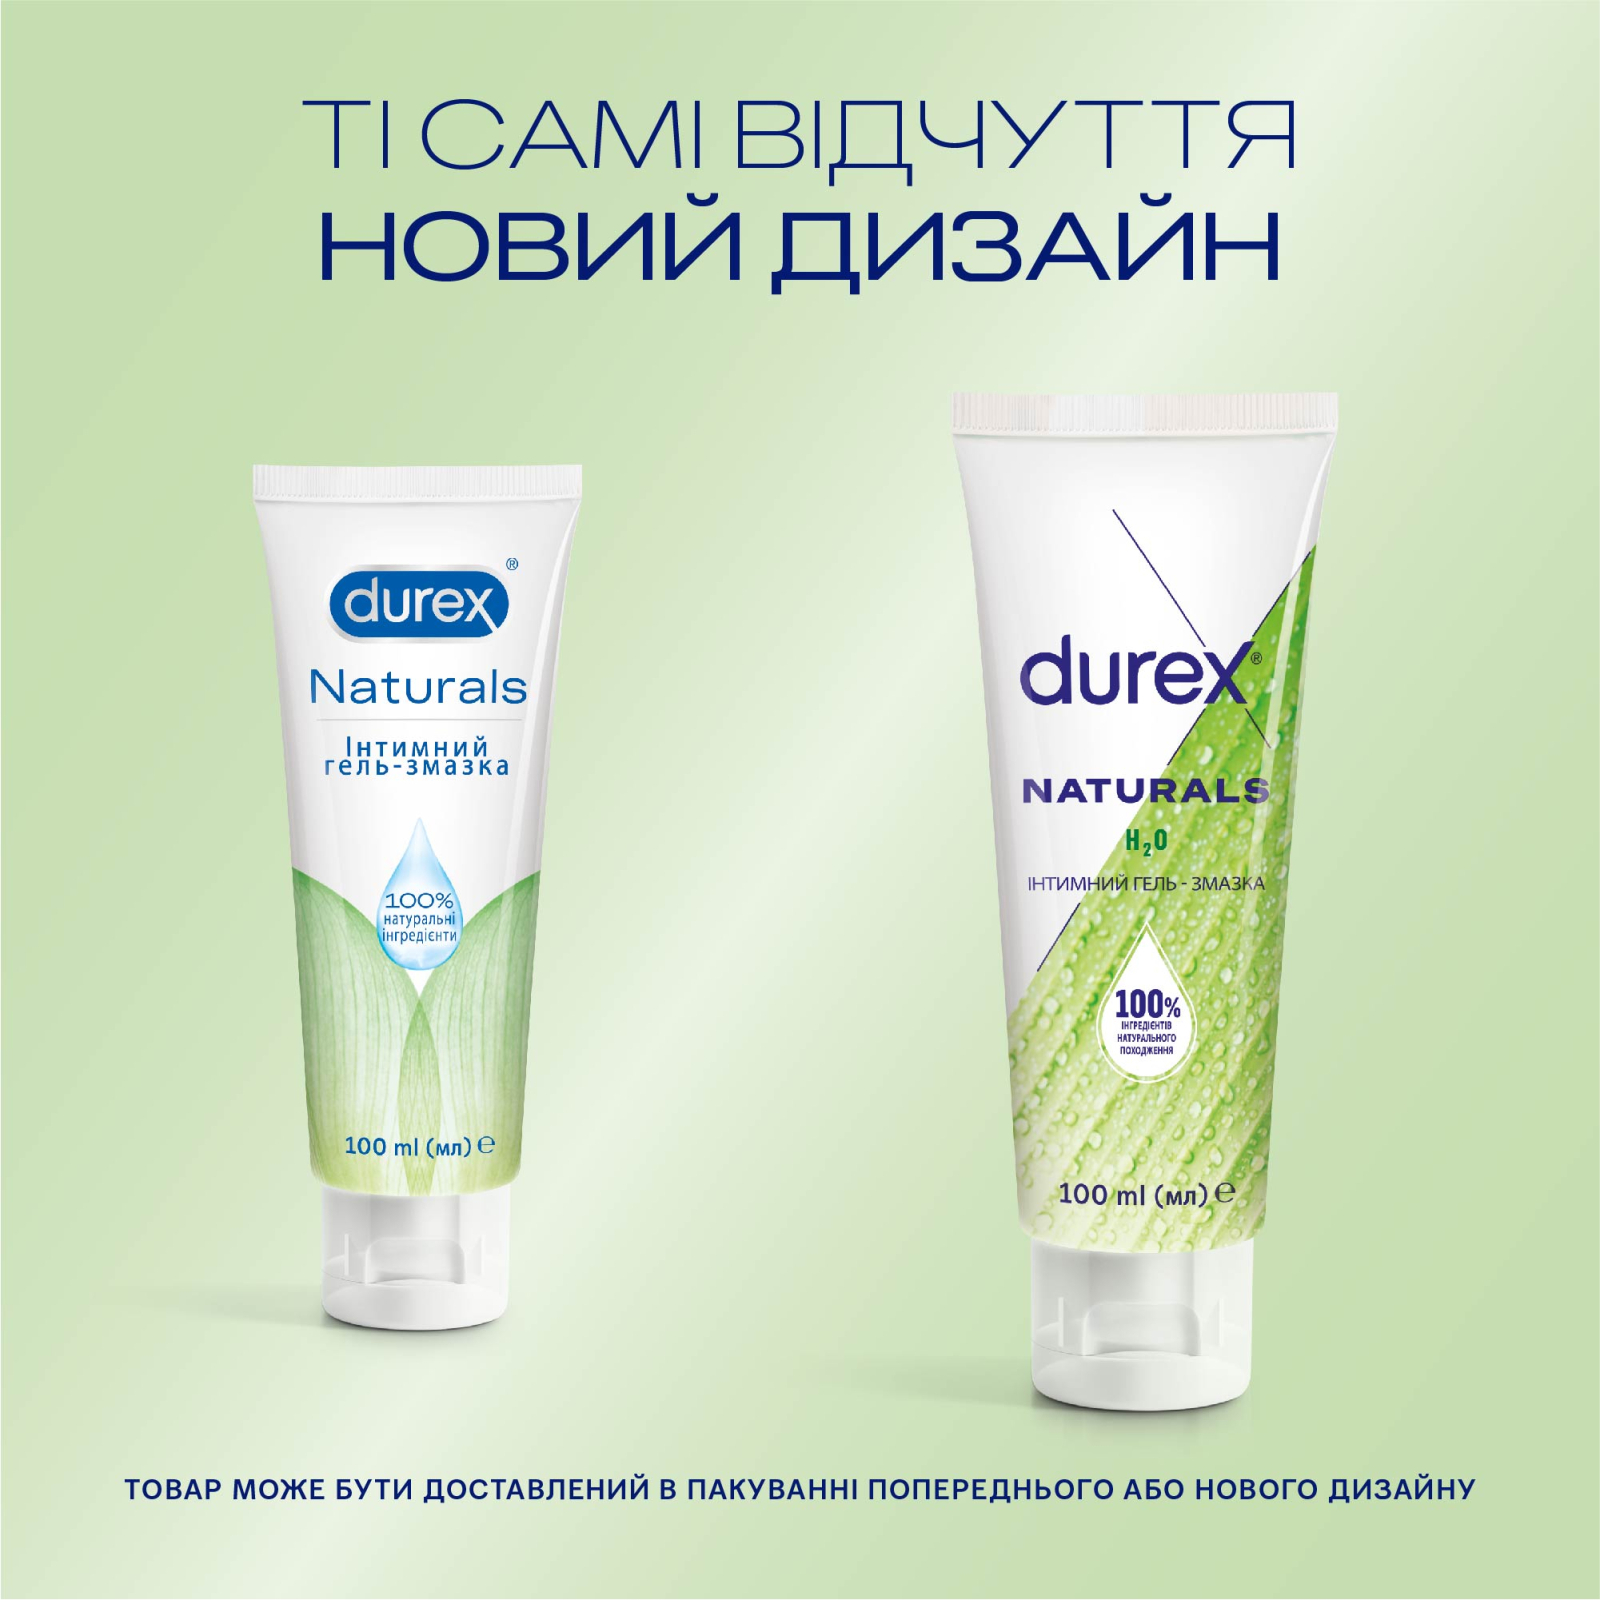 Интимный гель-смазка Durex Naturals из натуральных ингредиентов без красителей и ароматизаторов (лубрикант) 100 мл (4820108005273) изображение 4